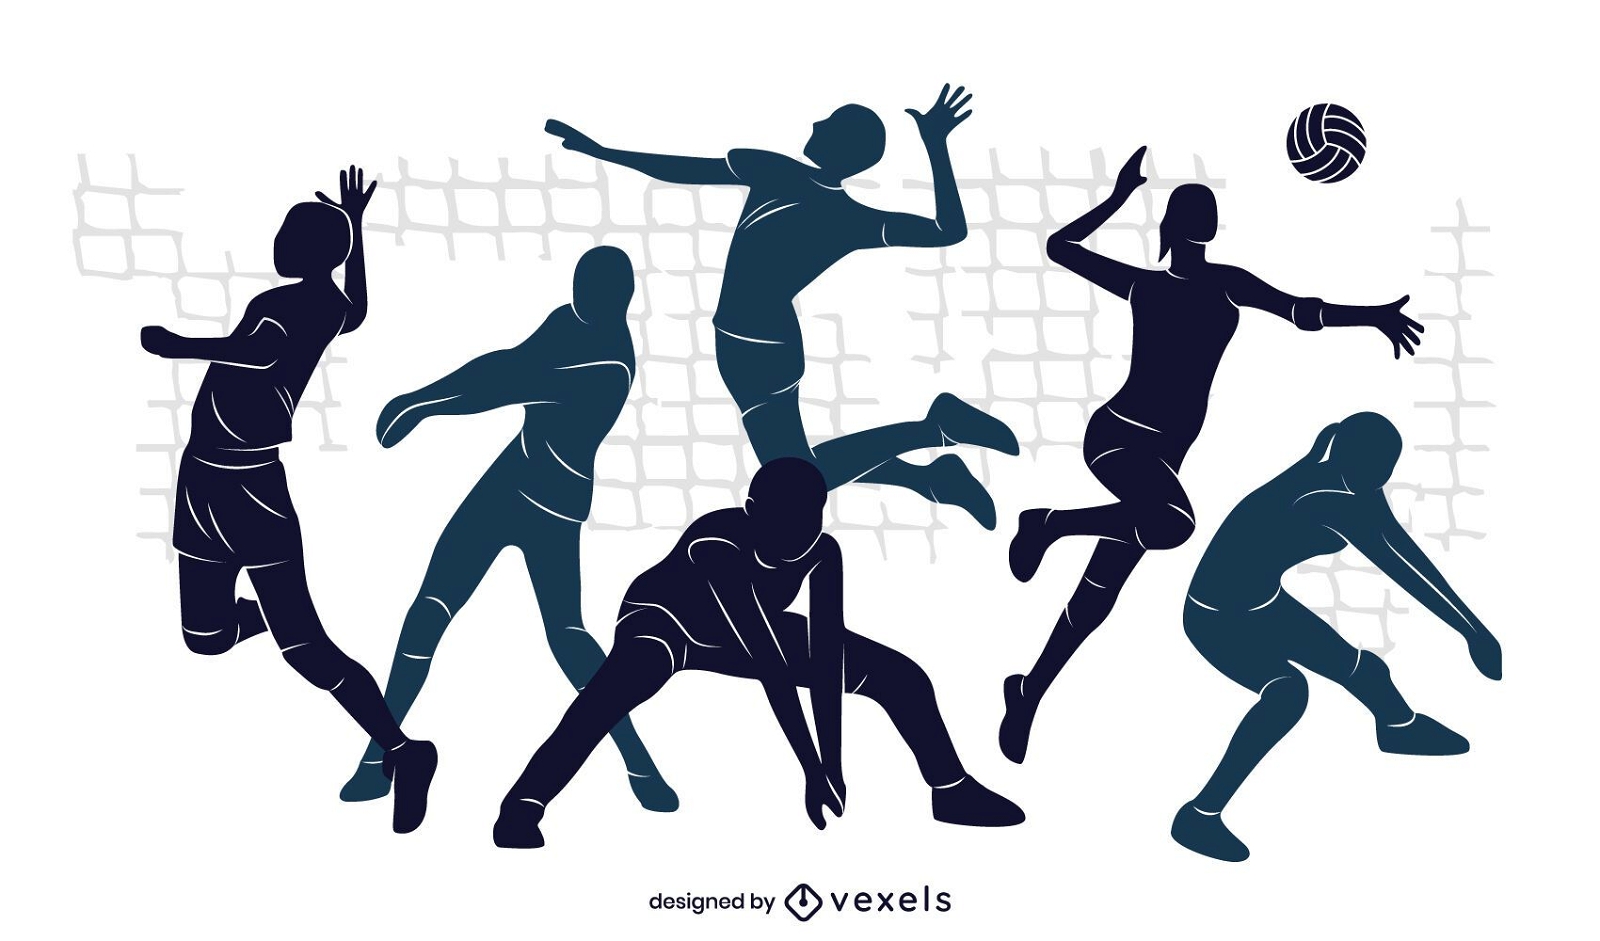 Diseño de ilustración del equipo de voleibol